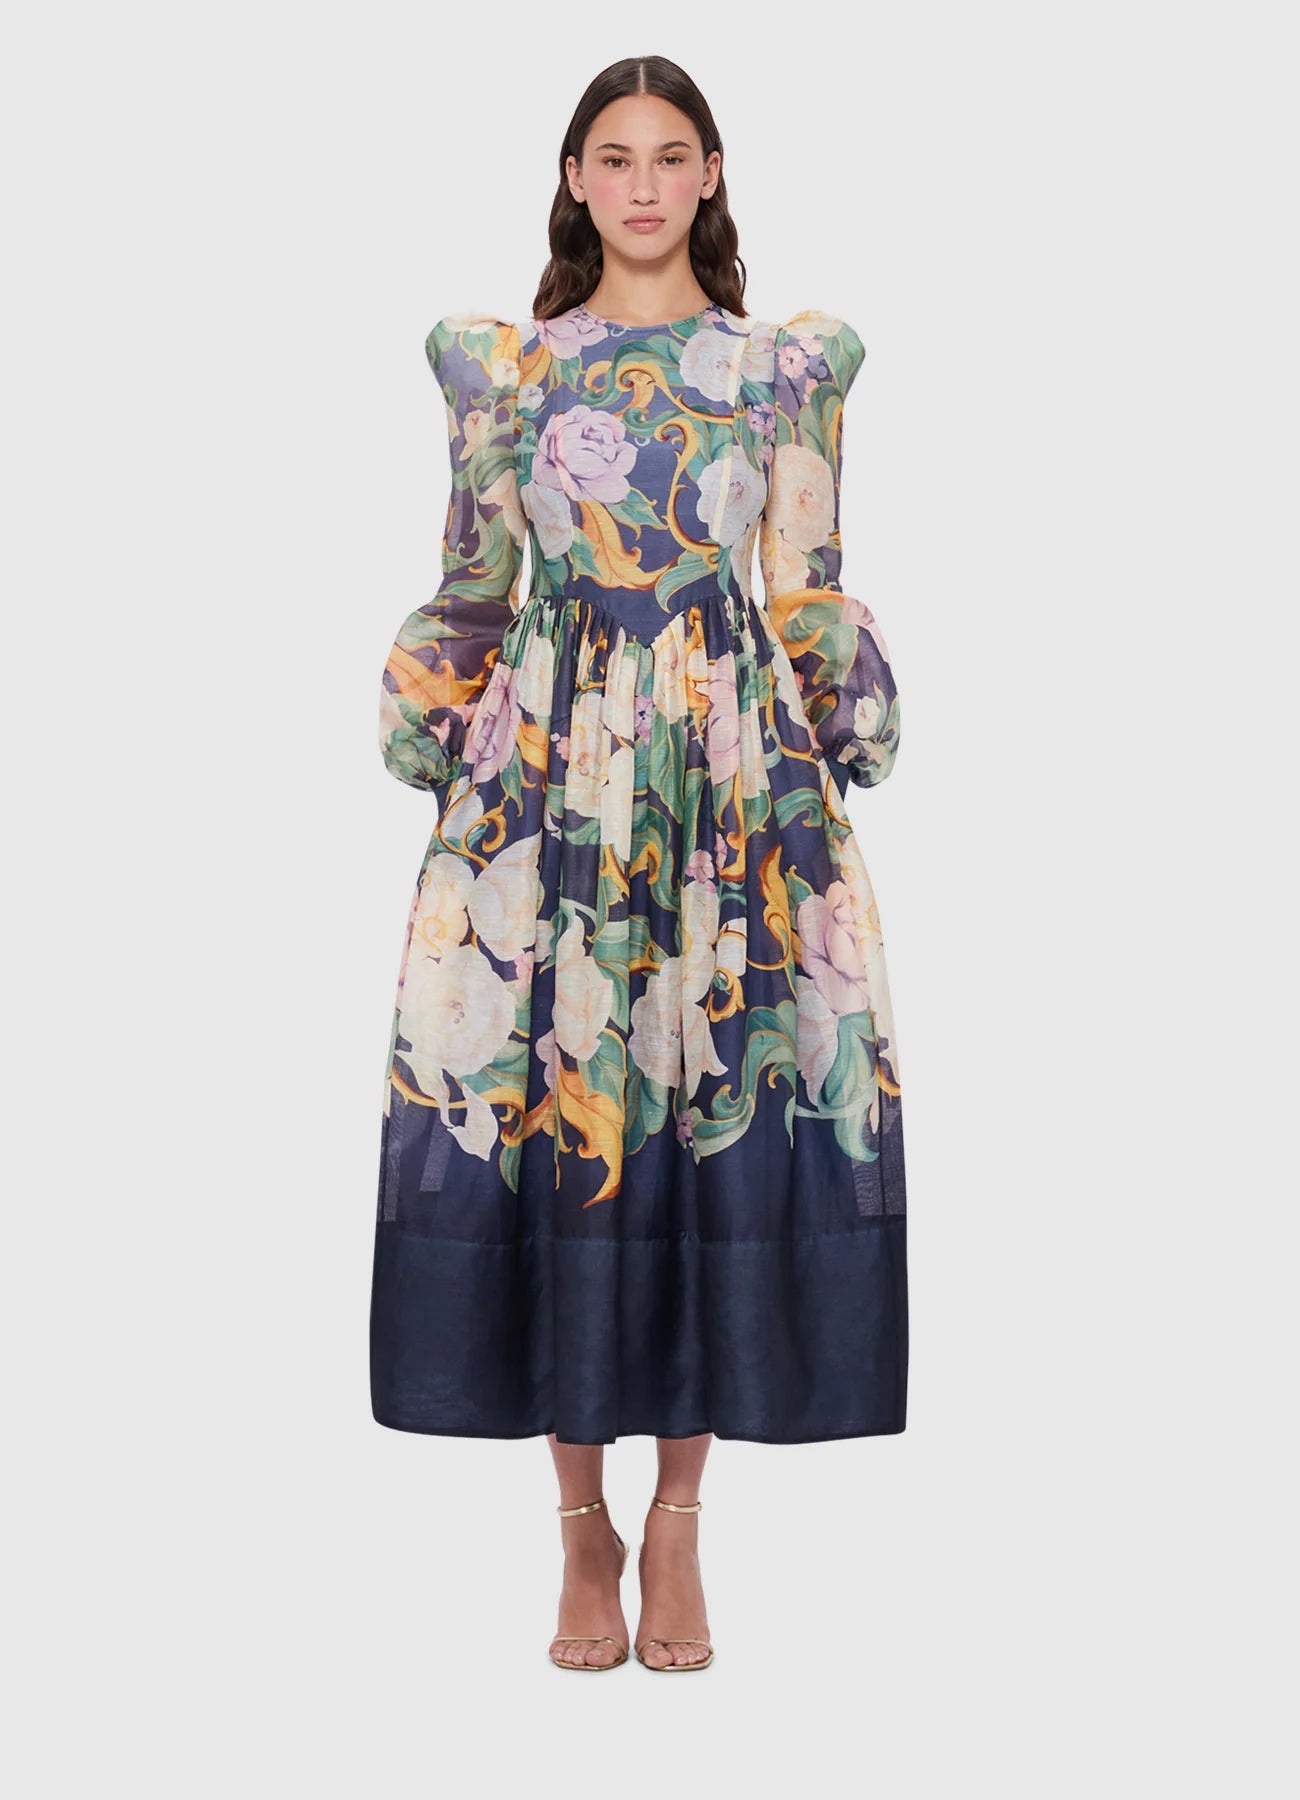 Jordana Structured Shoulder Dress - Adorn Print In Virtue